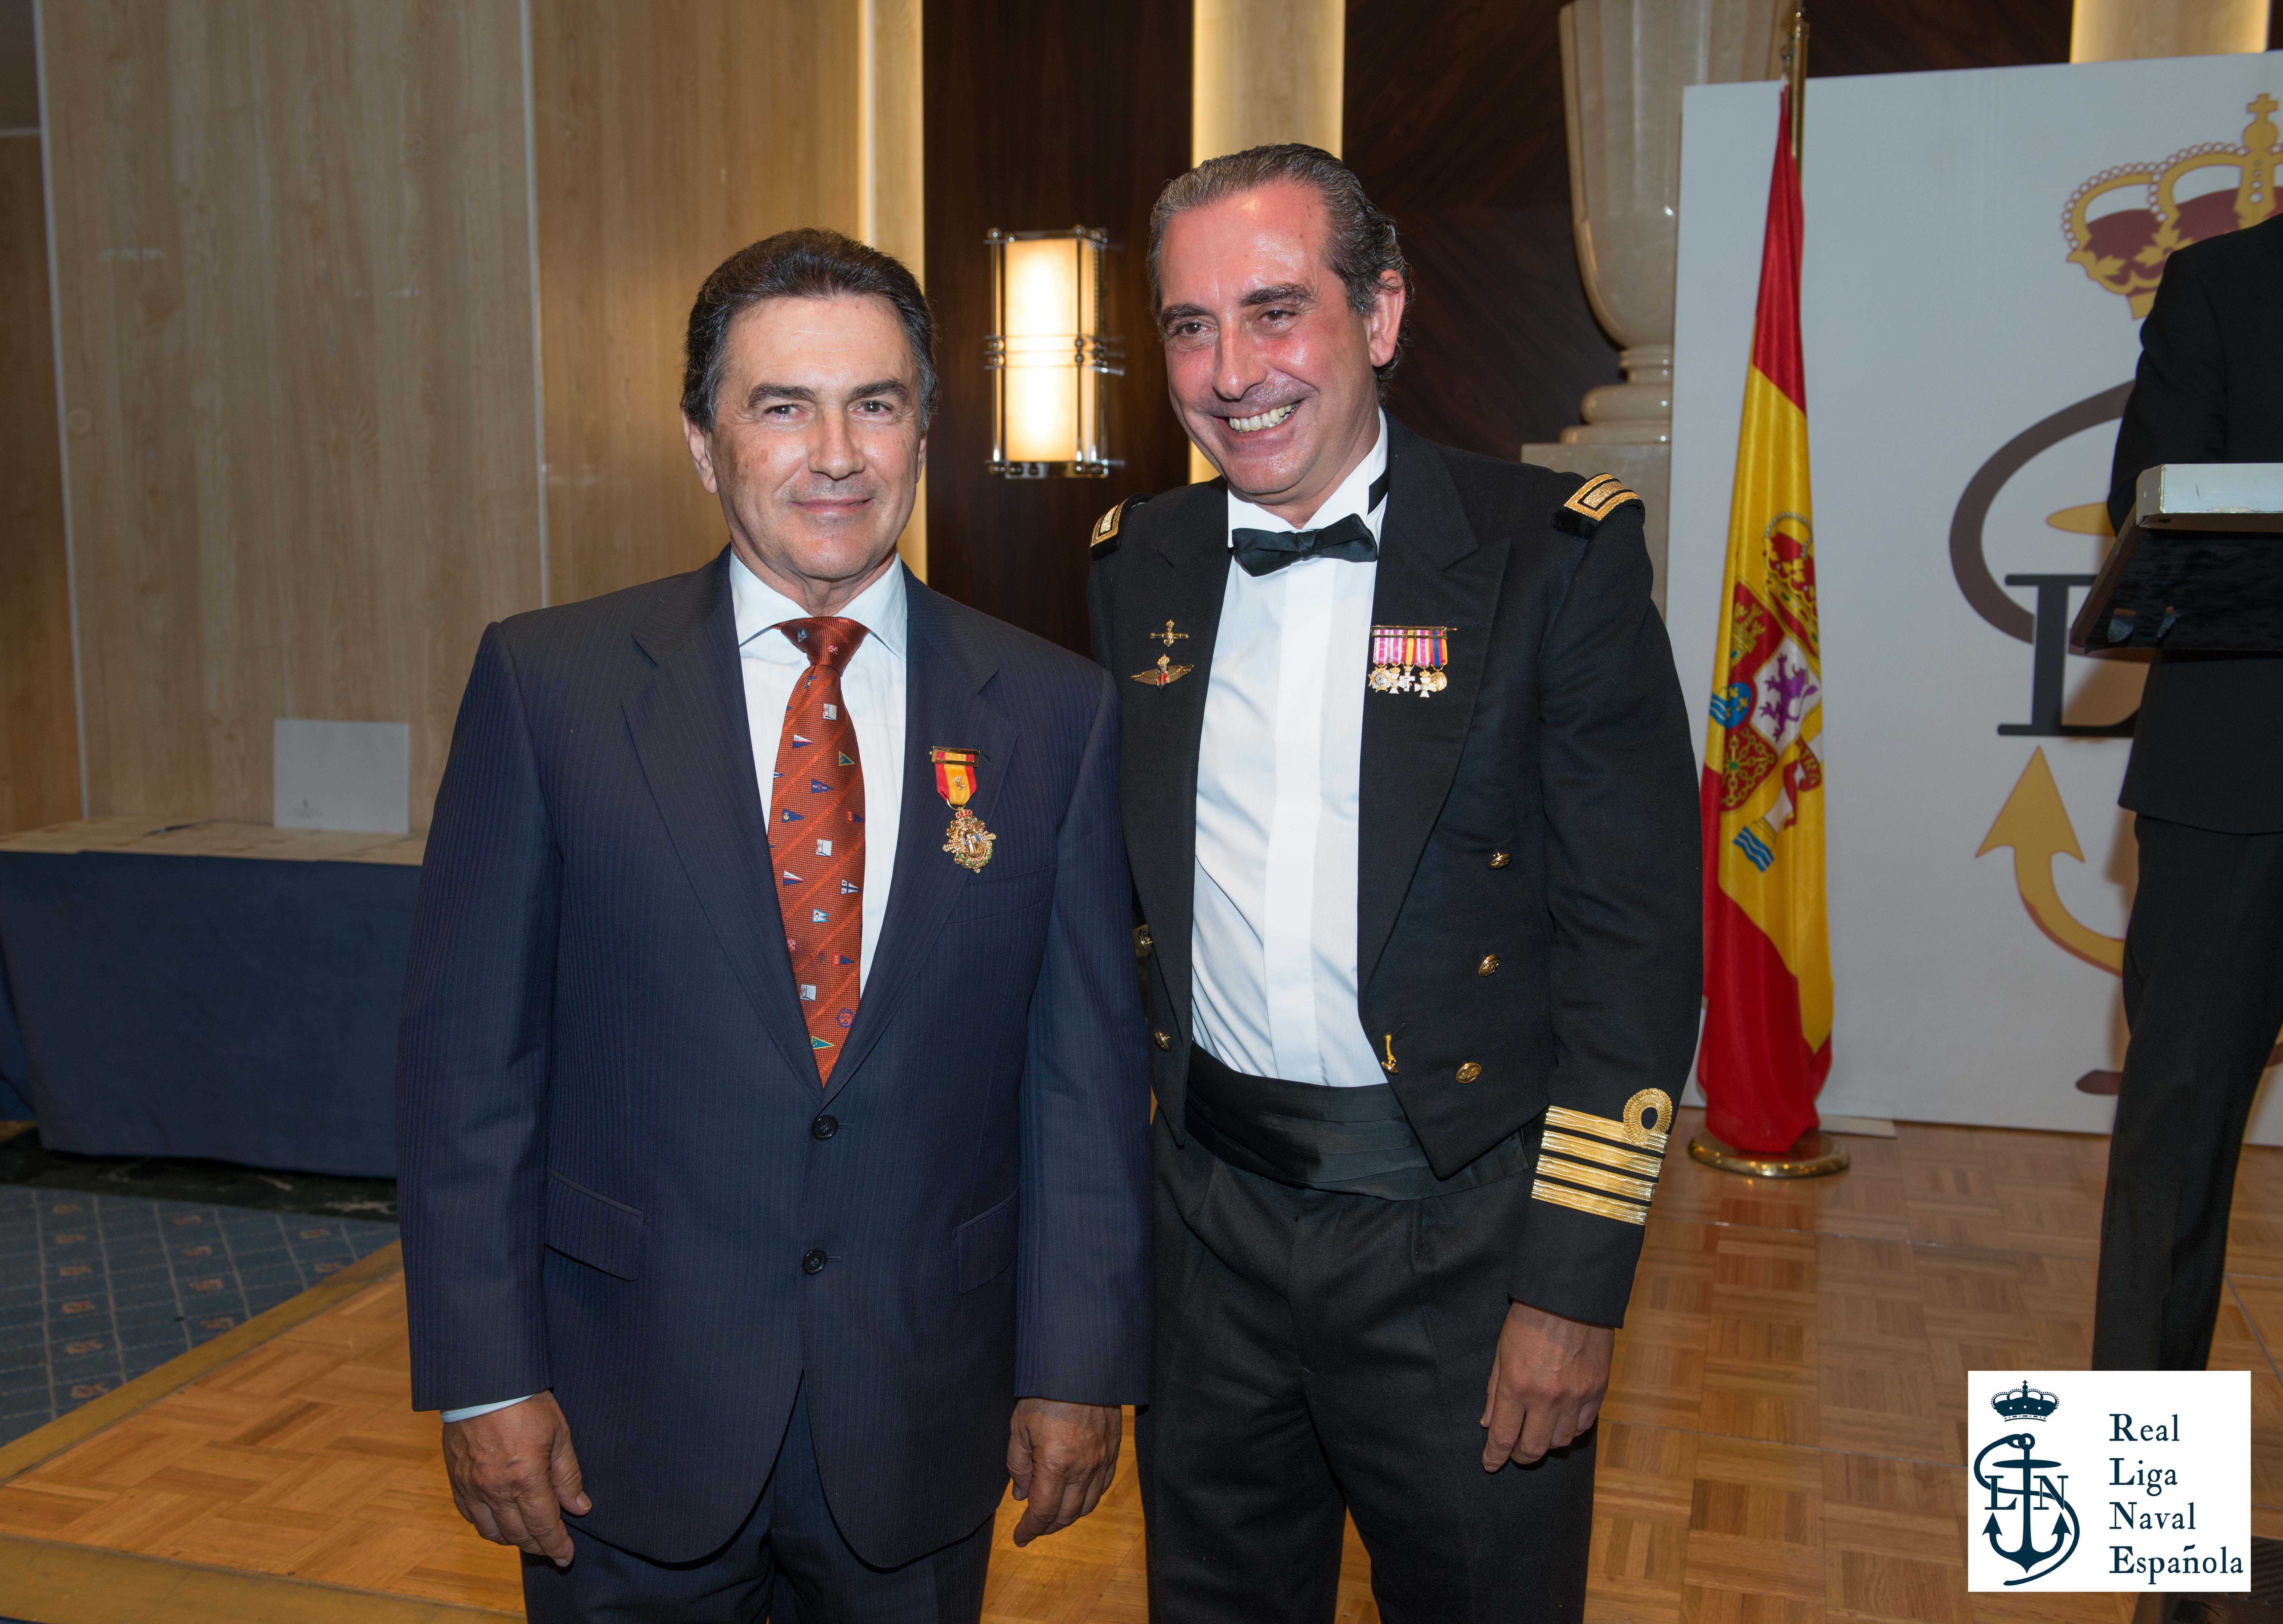 Pedro Campos, galardonado con la Medalla de Oro de la Real Liga Naval Española